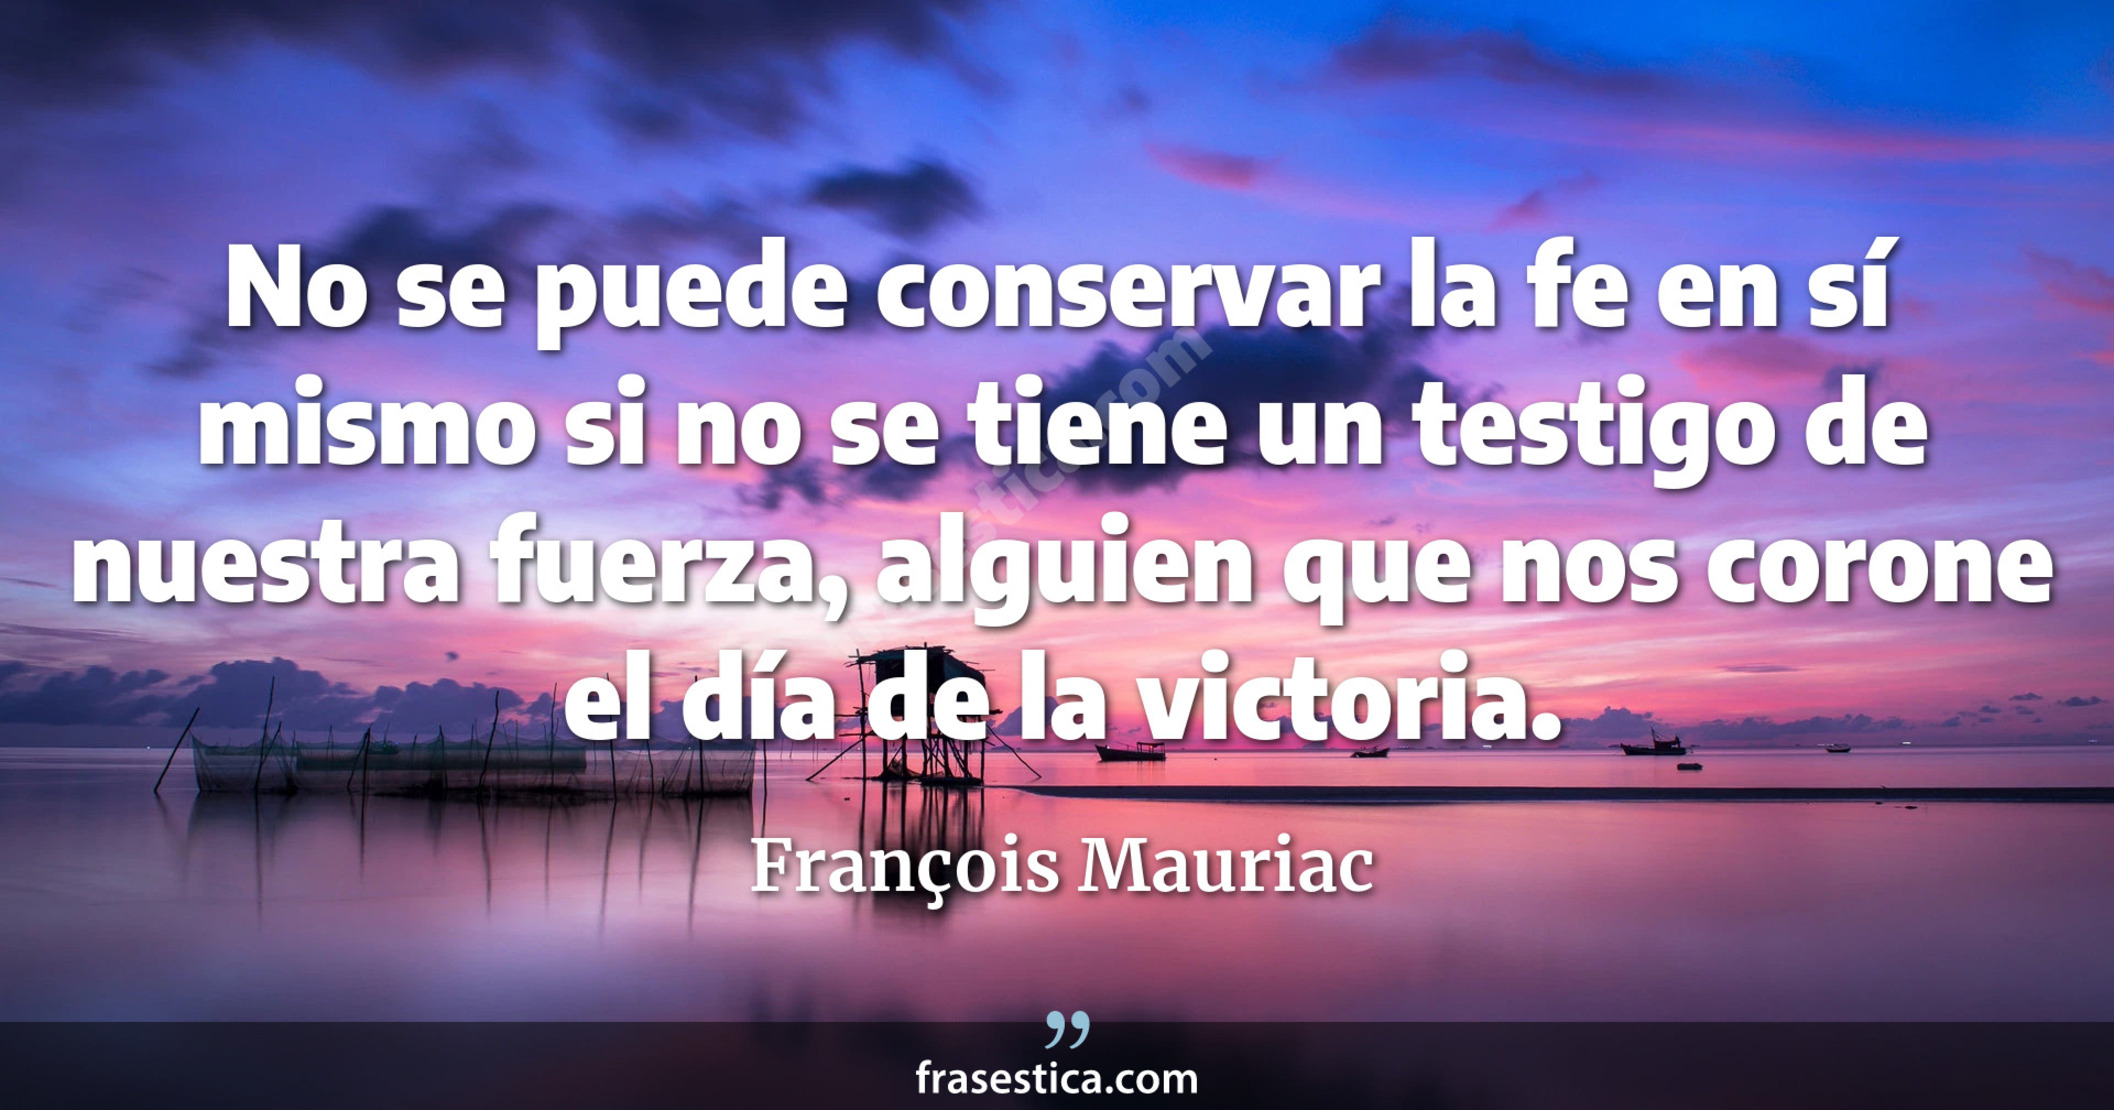 No se puede conservar la fe en sí mismo si no se tiene un testigo de nuestra fuerza, alguien que nos corone el día de la victoria. - François Mauriac